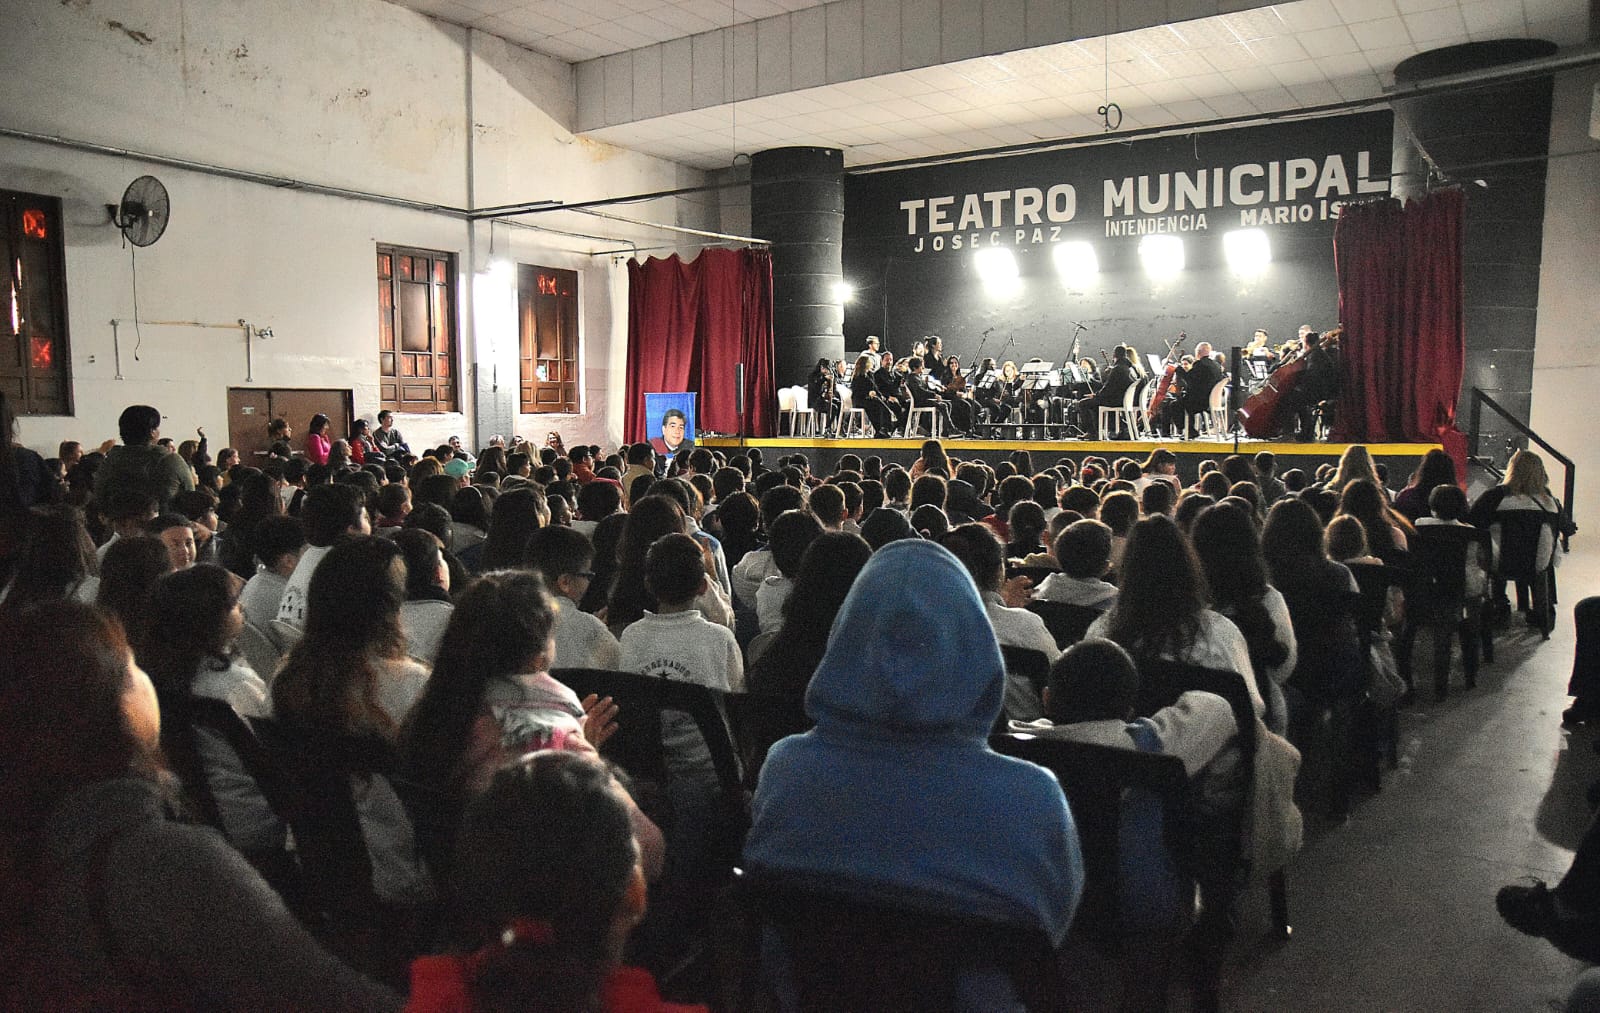 Con presencia de la comunidad, El municipio d José C. Paz realizo actividades culturales